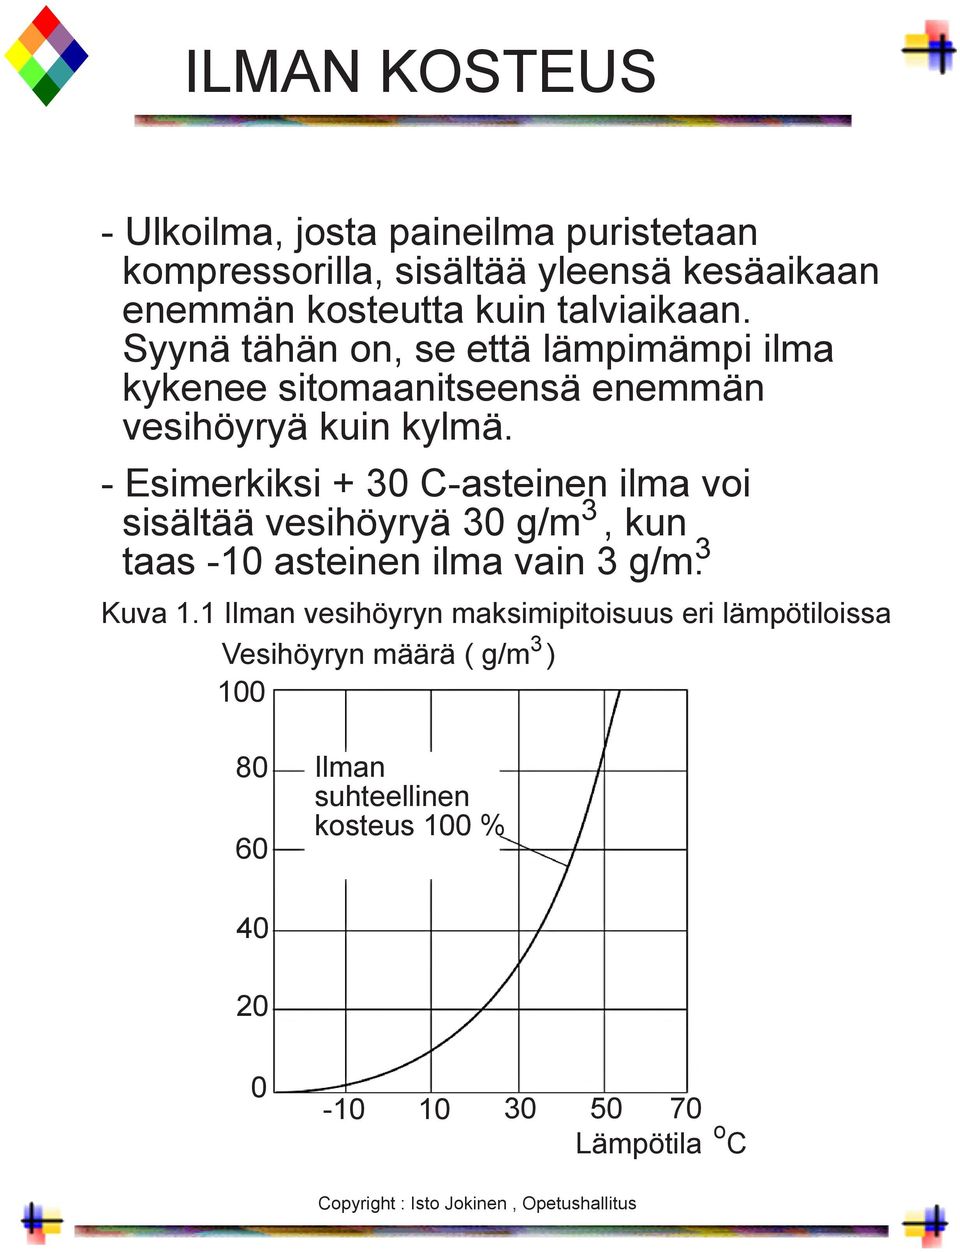 - Esimerkiksi + 30 C-asteinen ilma voi 3 sisältää vesihöyryä 30 g/m, kun 3 taas -10 asteinen ilma vain 3 g/m. Kuva 1.